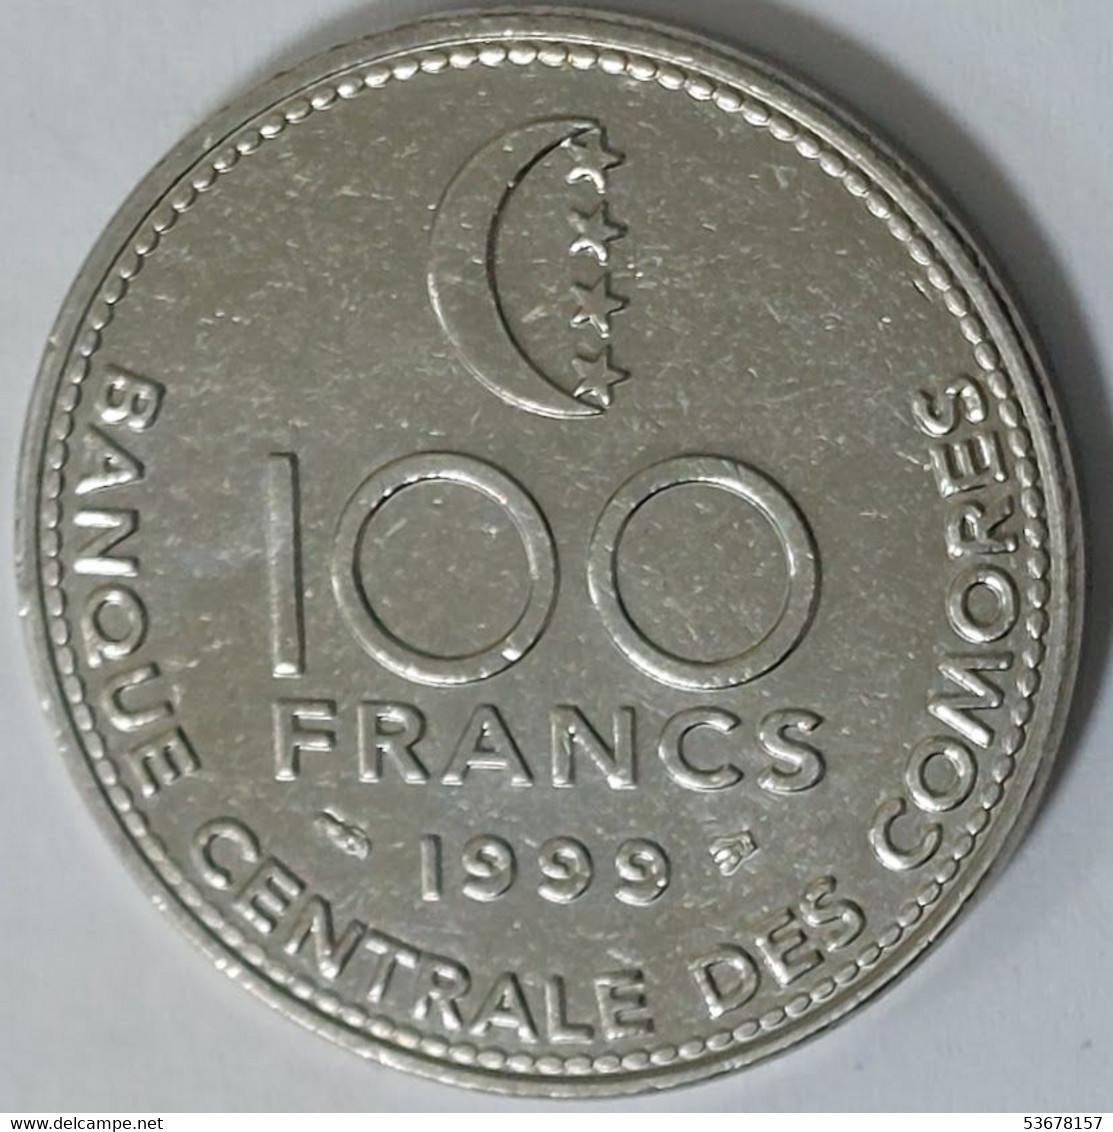 Comoros - 100 Francs, 1999, KM# 18 - Comoros